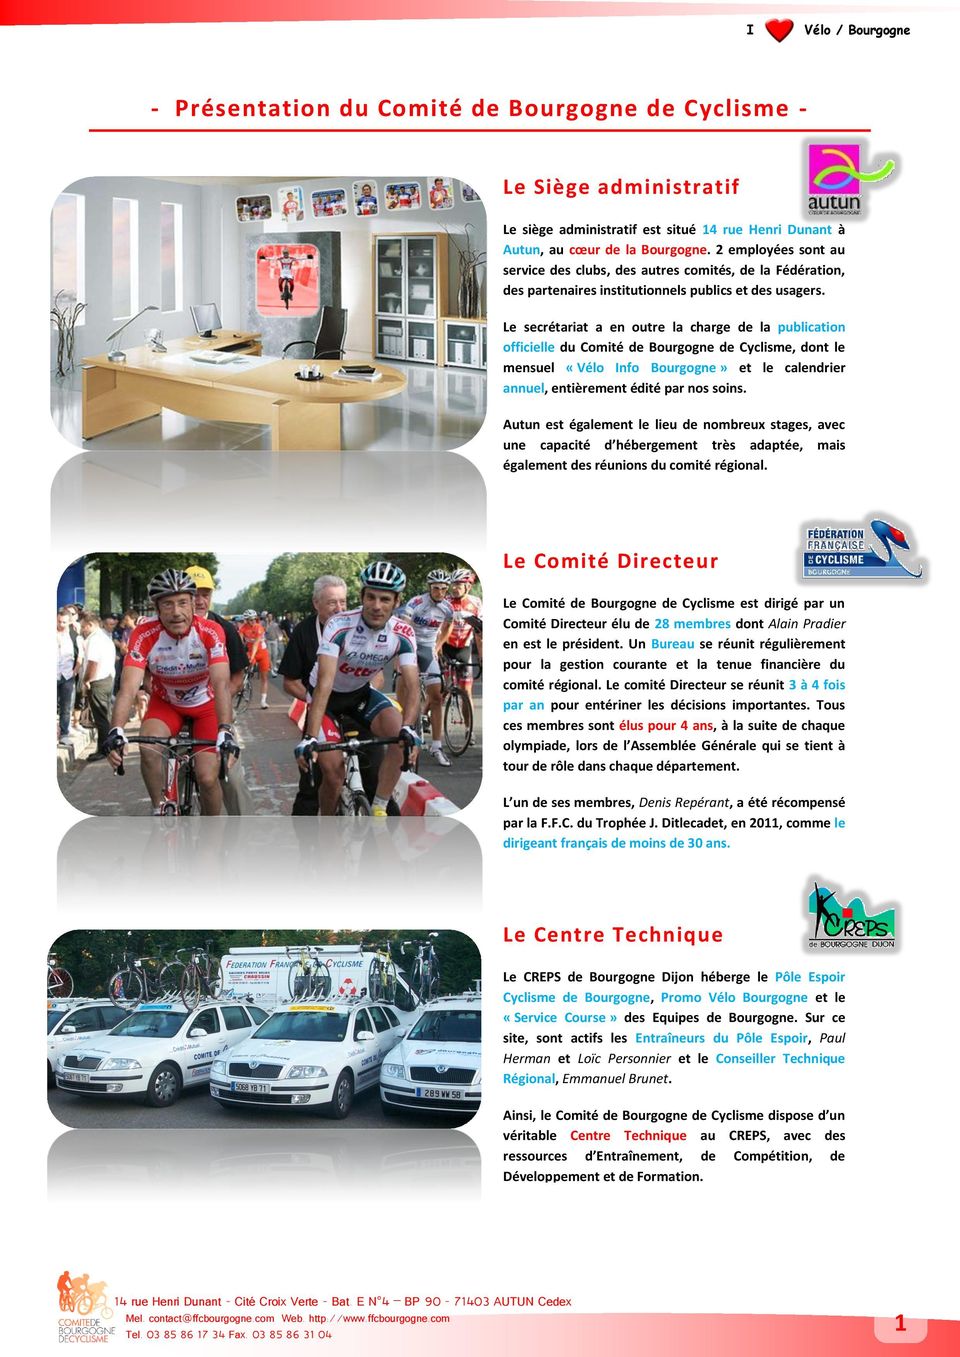 Le secrétariat a en outre la charge de la publication officielle du Comité de Bourgogne de Cyclisme, dont le mensuel «Vélo Info Bourgogne» et le calendrier annuel, entièrement édité par nos soins.